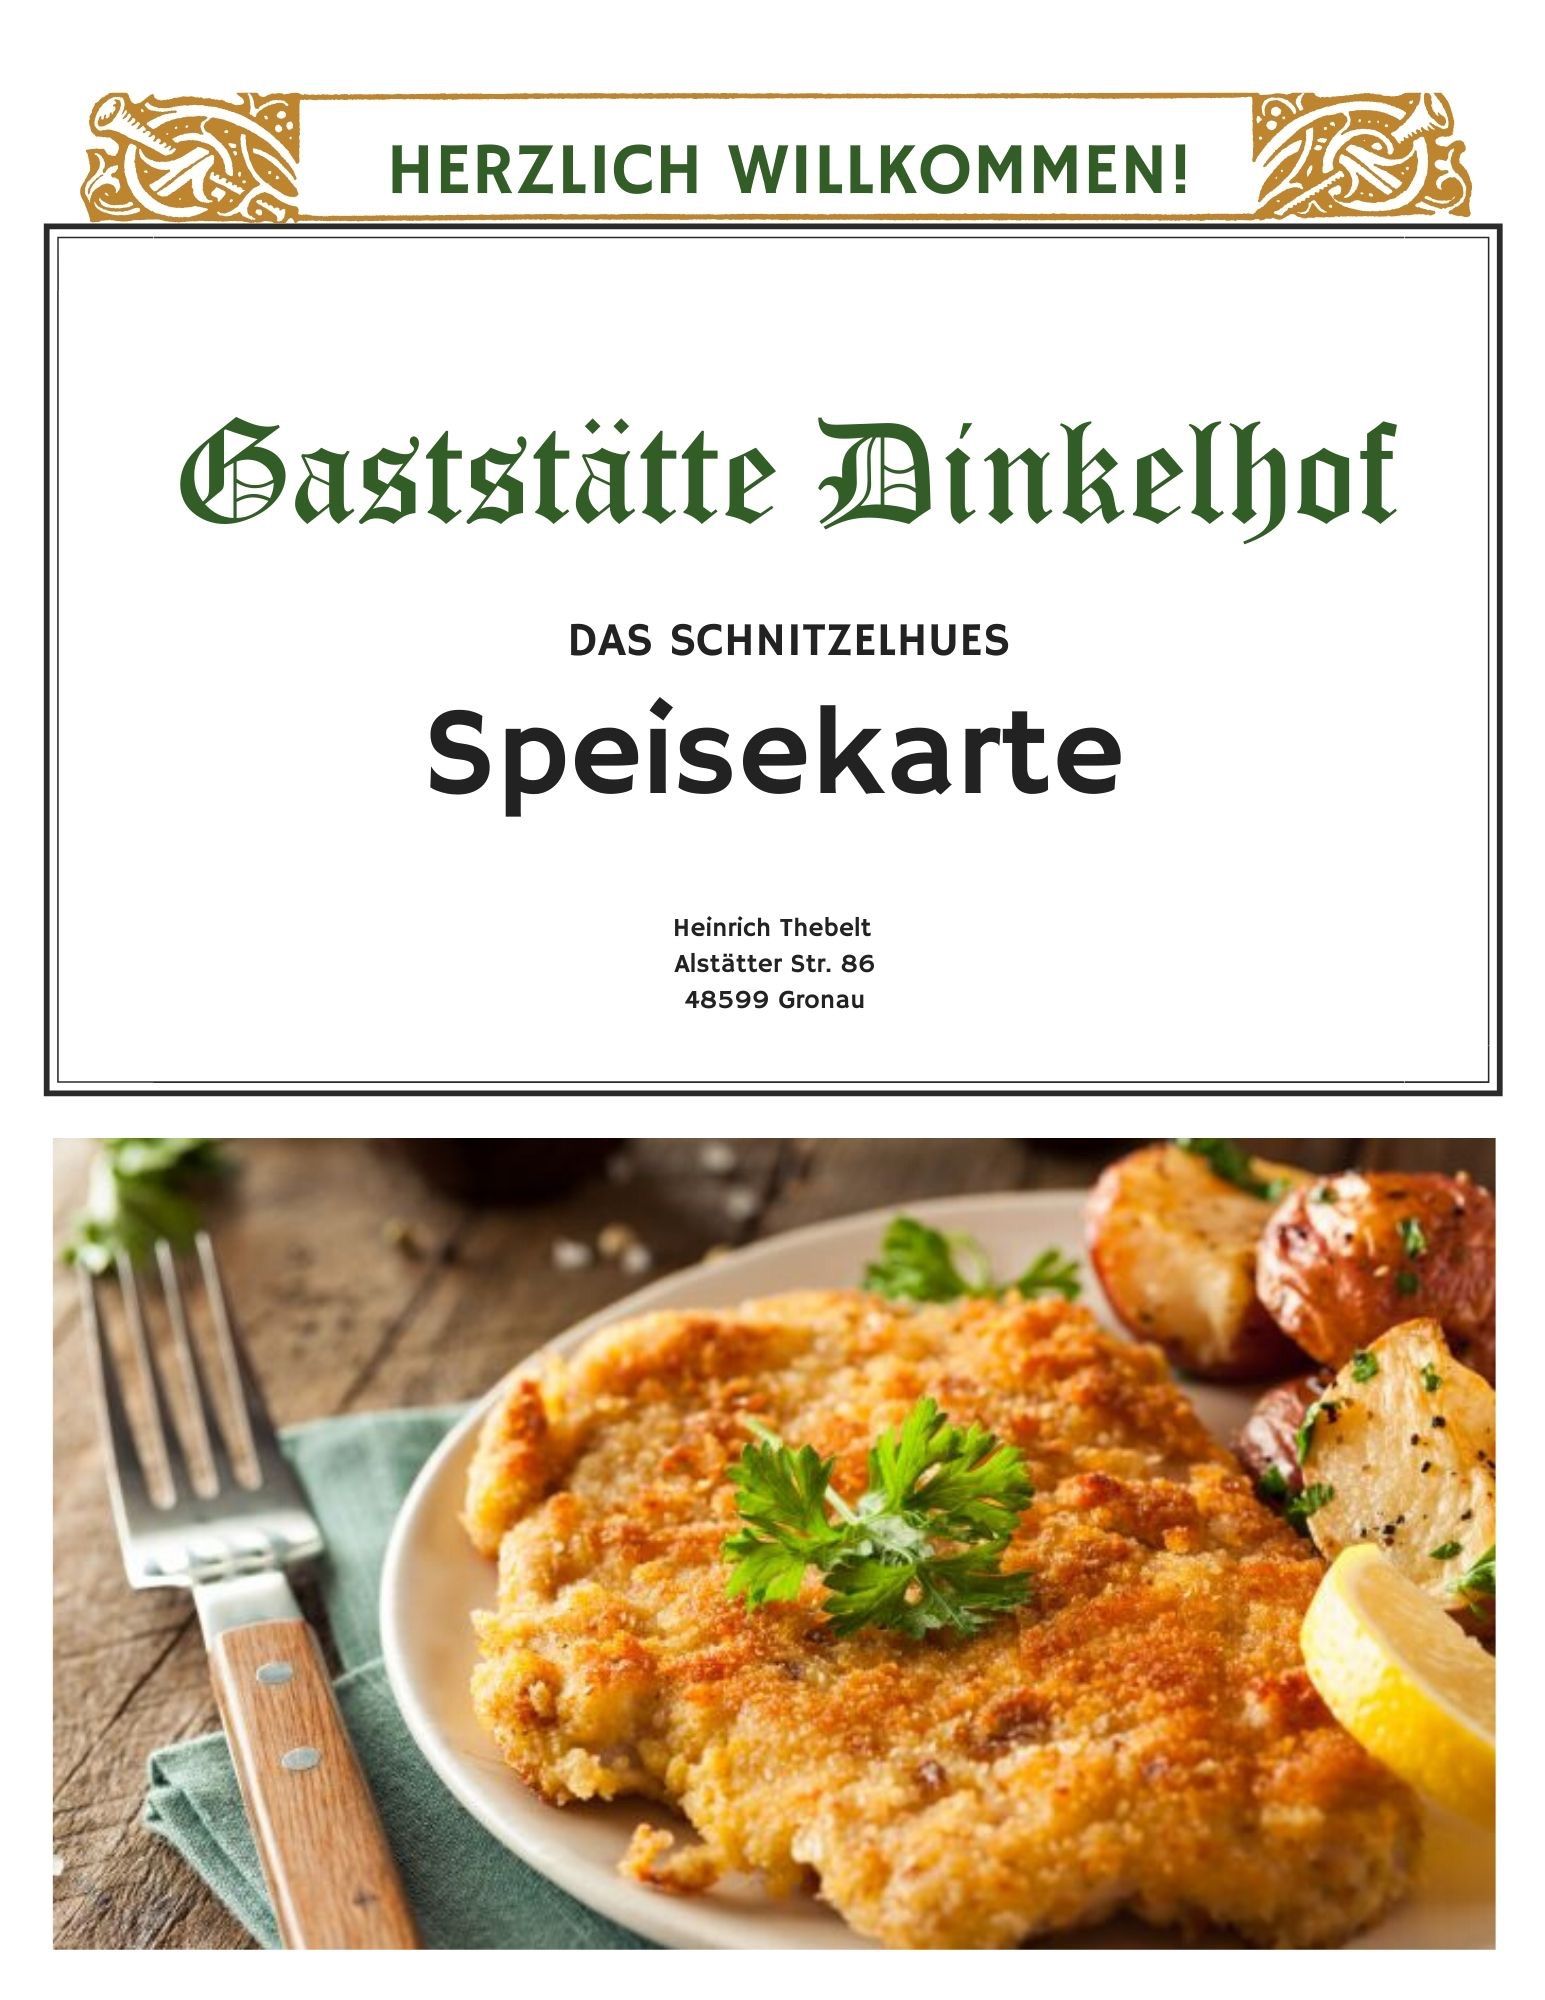 Speisekarte | Gaststätte Dinkelhof